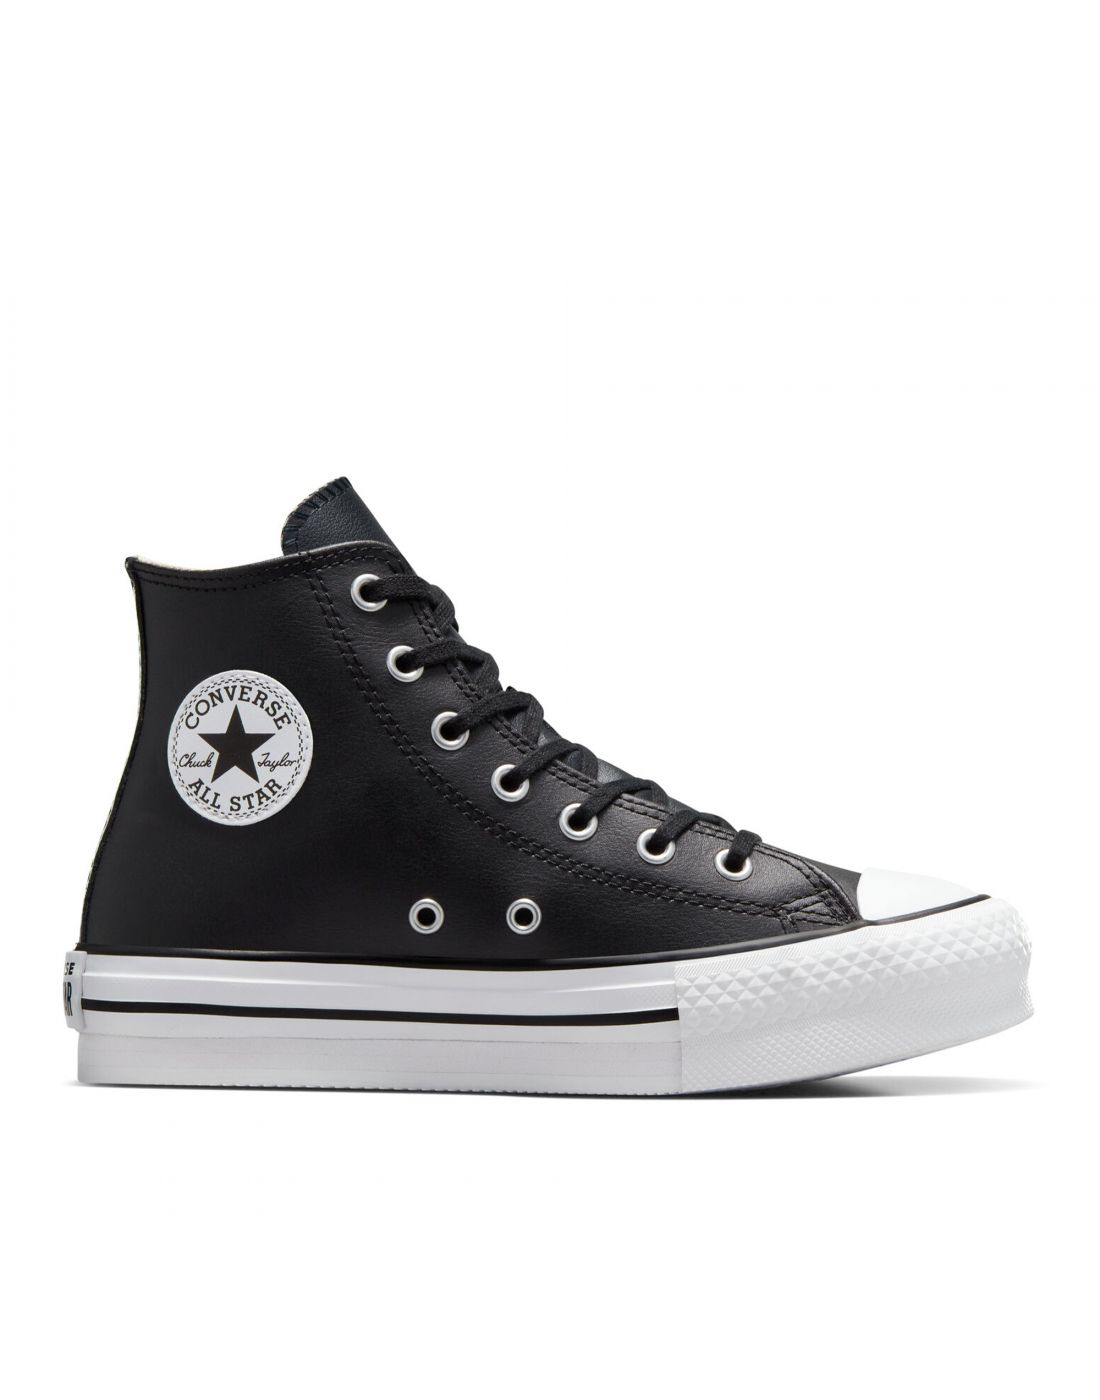 Παιδικά Παπούτσια Sneakers All Star, Converse, 23270393 | LapinKids.com |  LAPIN KIDS